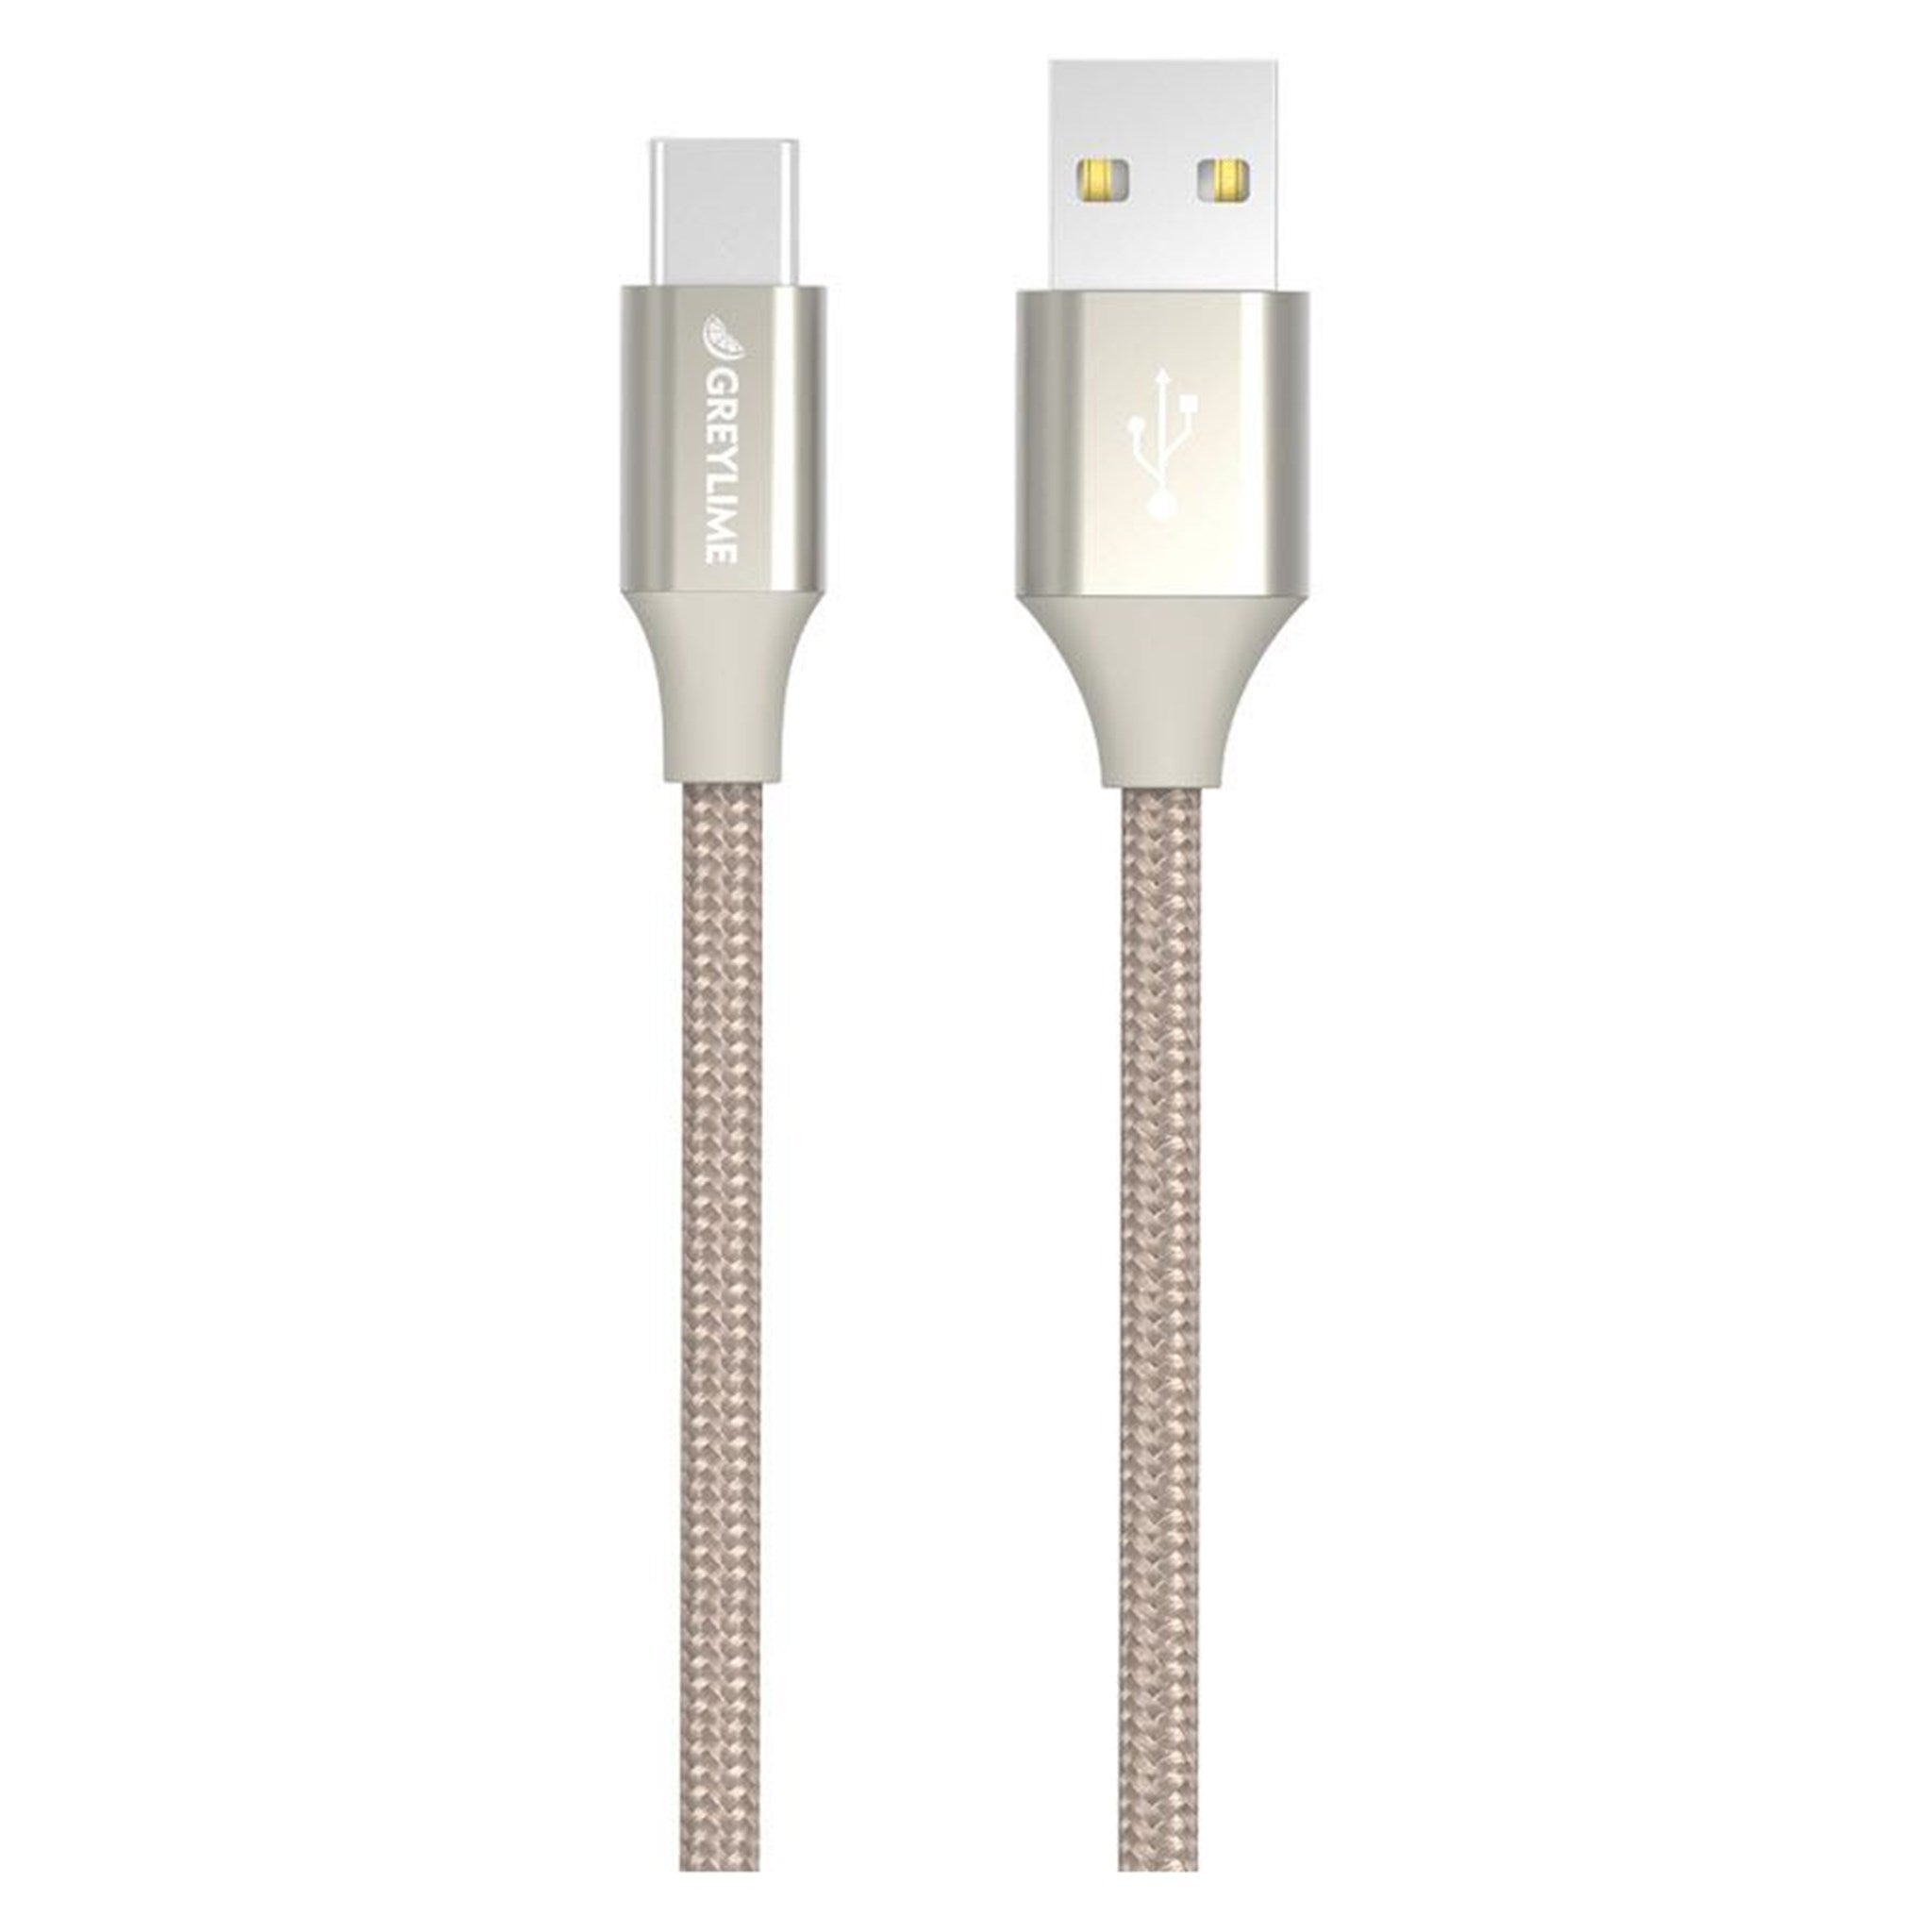 Billede af GreyLime Braided USB-A til USB-C Kabel Beige 1 m hos GreyLime